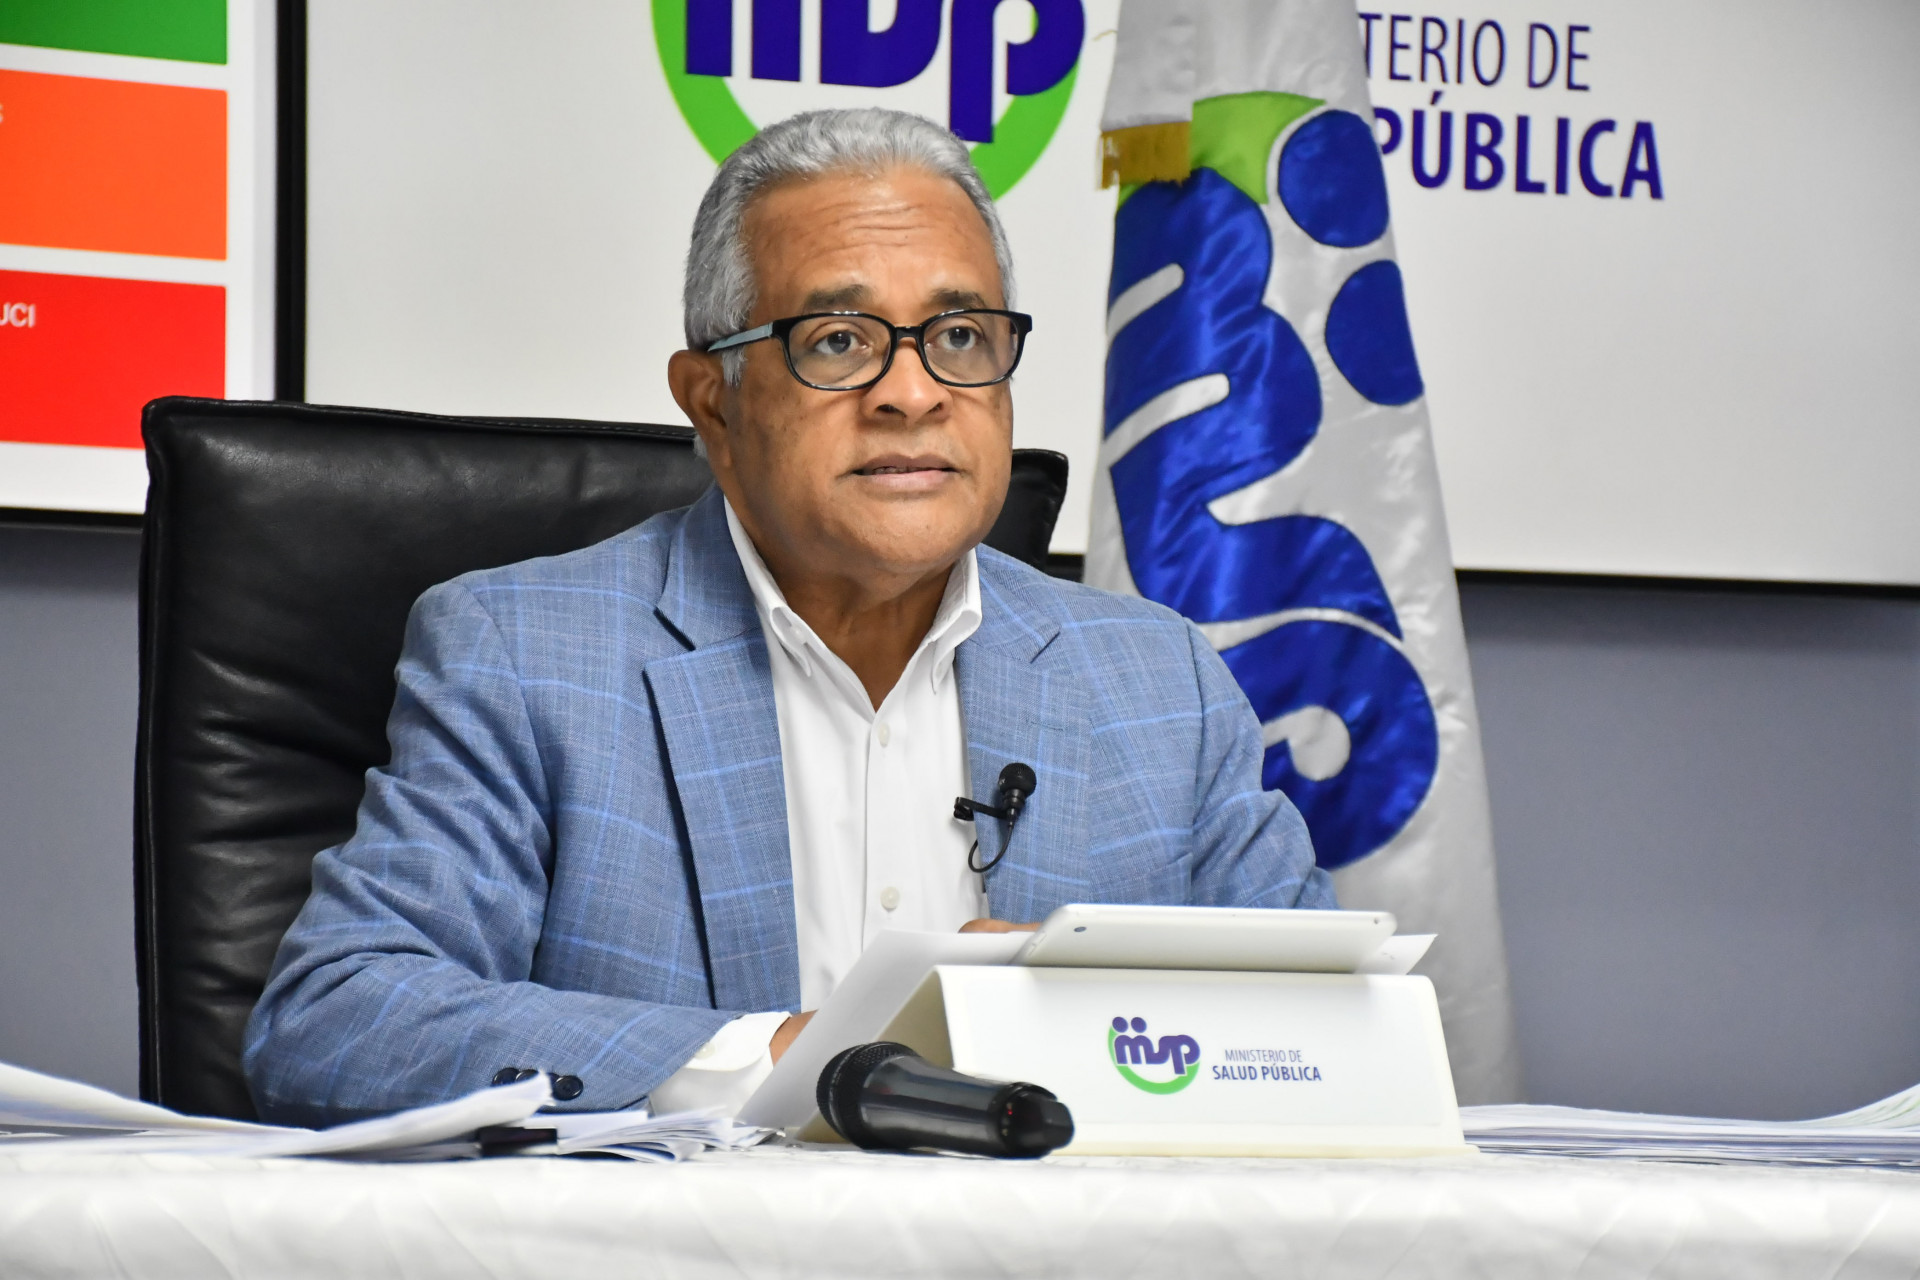 REPÚBLICA DOMINICANA: Ministerio de Salud Pública felicita y reconoce importante labor de enfermeras en su día; recuperados de COVID-19 ascienden a 3,221